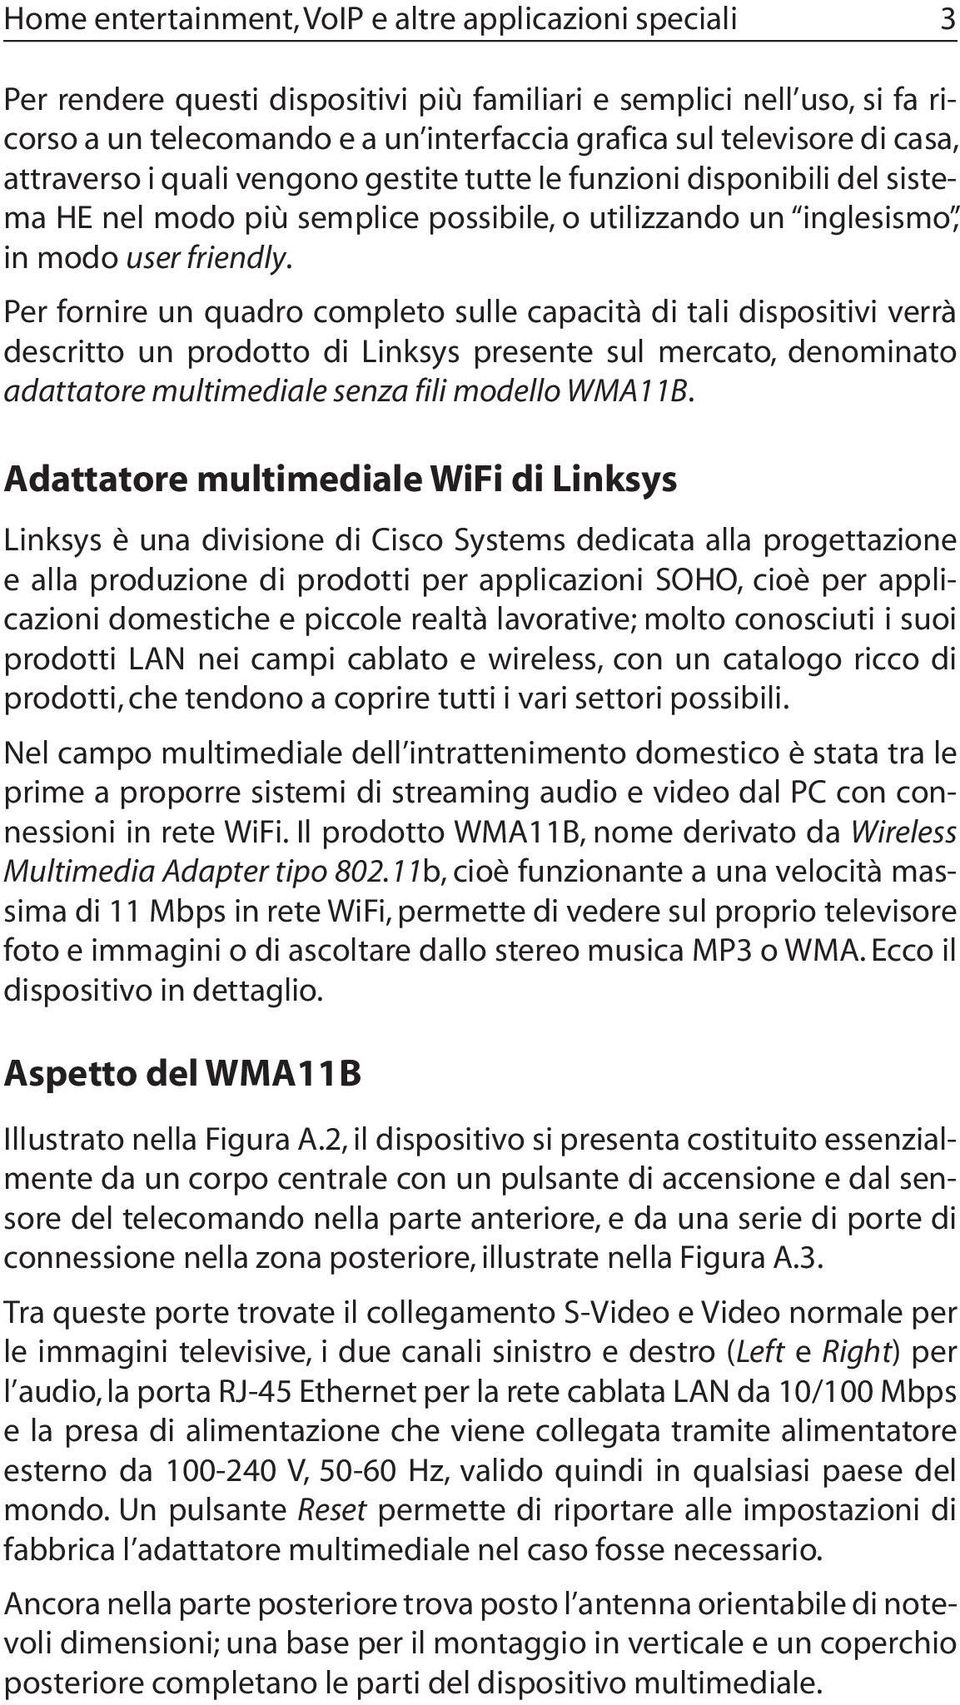 Per fornire un quadro completo sulle capacità di tali dispositivi verrà descritto un prodotto di Linksys presente sul mercato, denominato adattatore multimediale senza fili modello WMA11B.